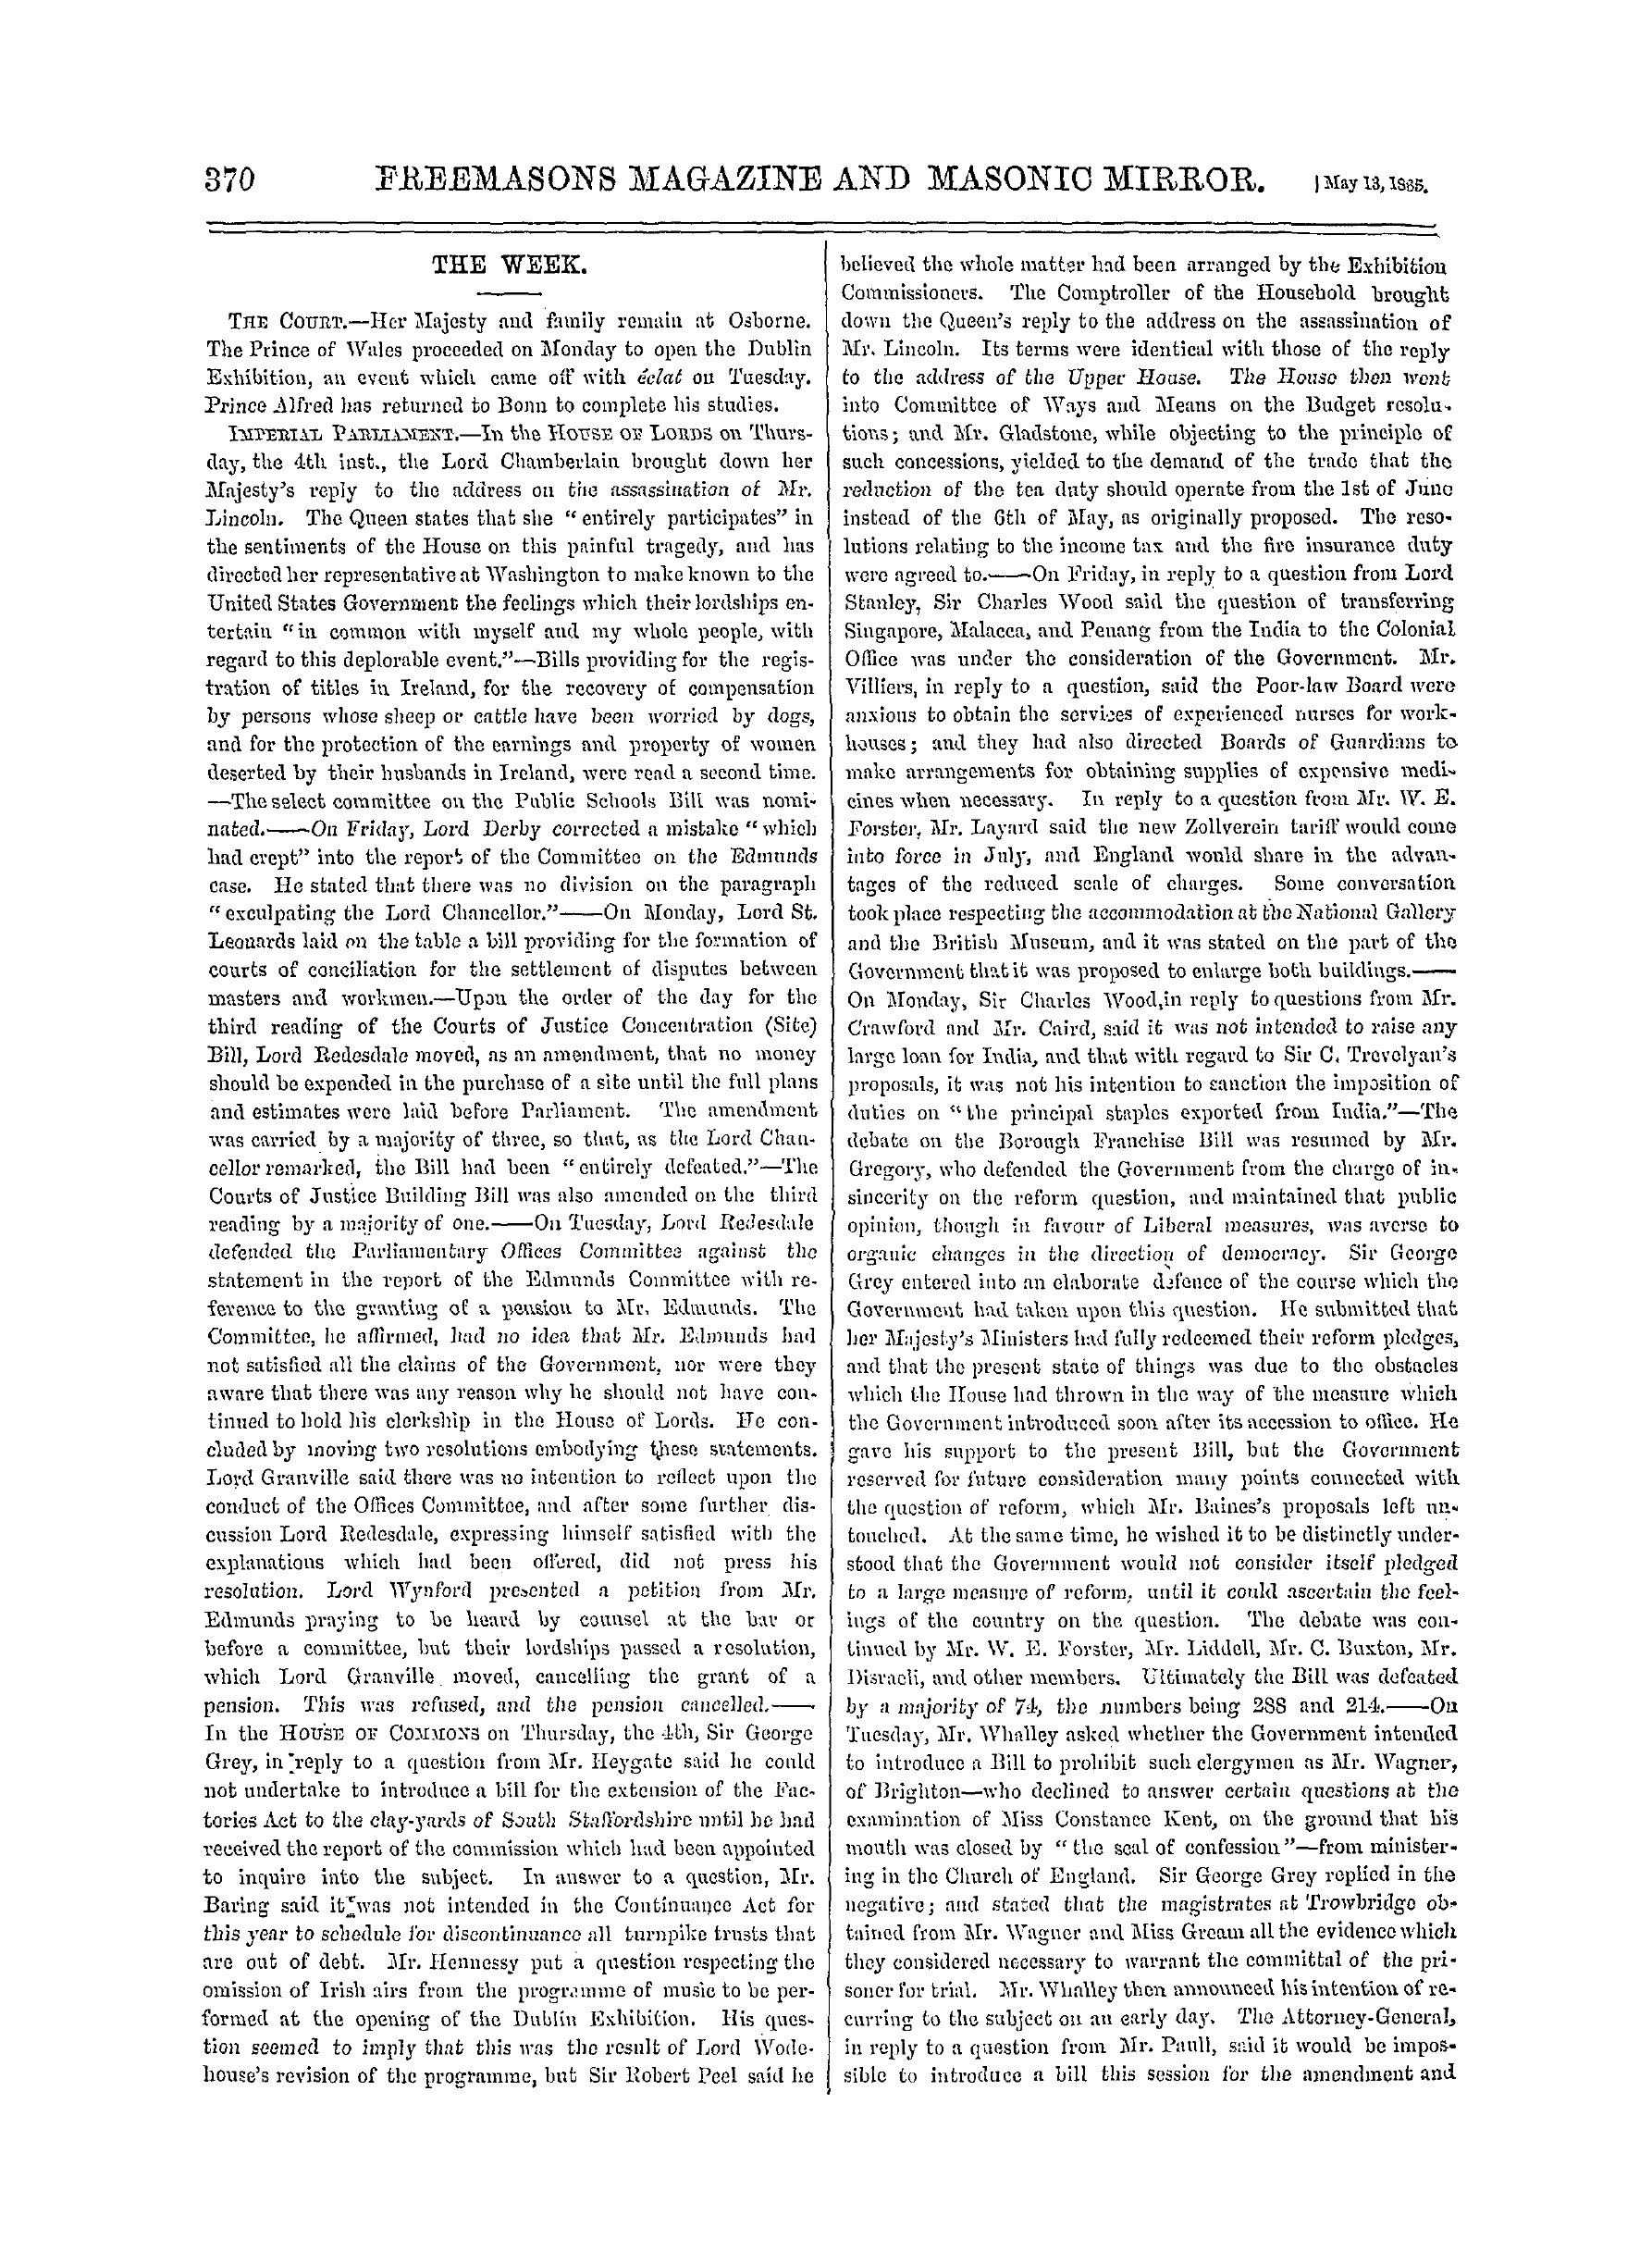 The Freemasons' Monthly Magazine: 1865-05-13: 18